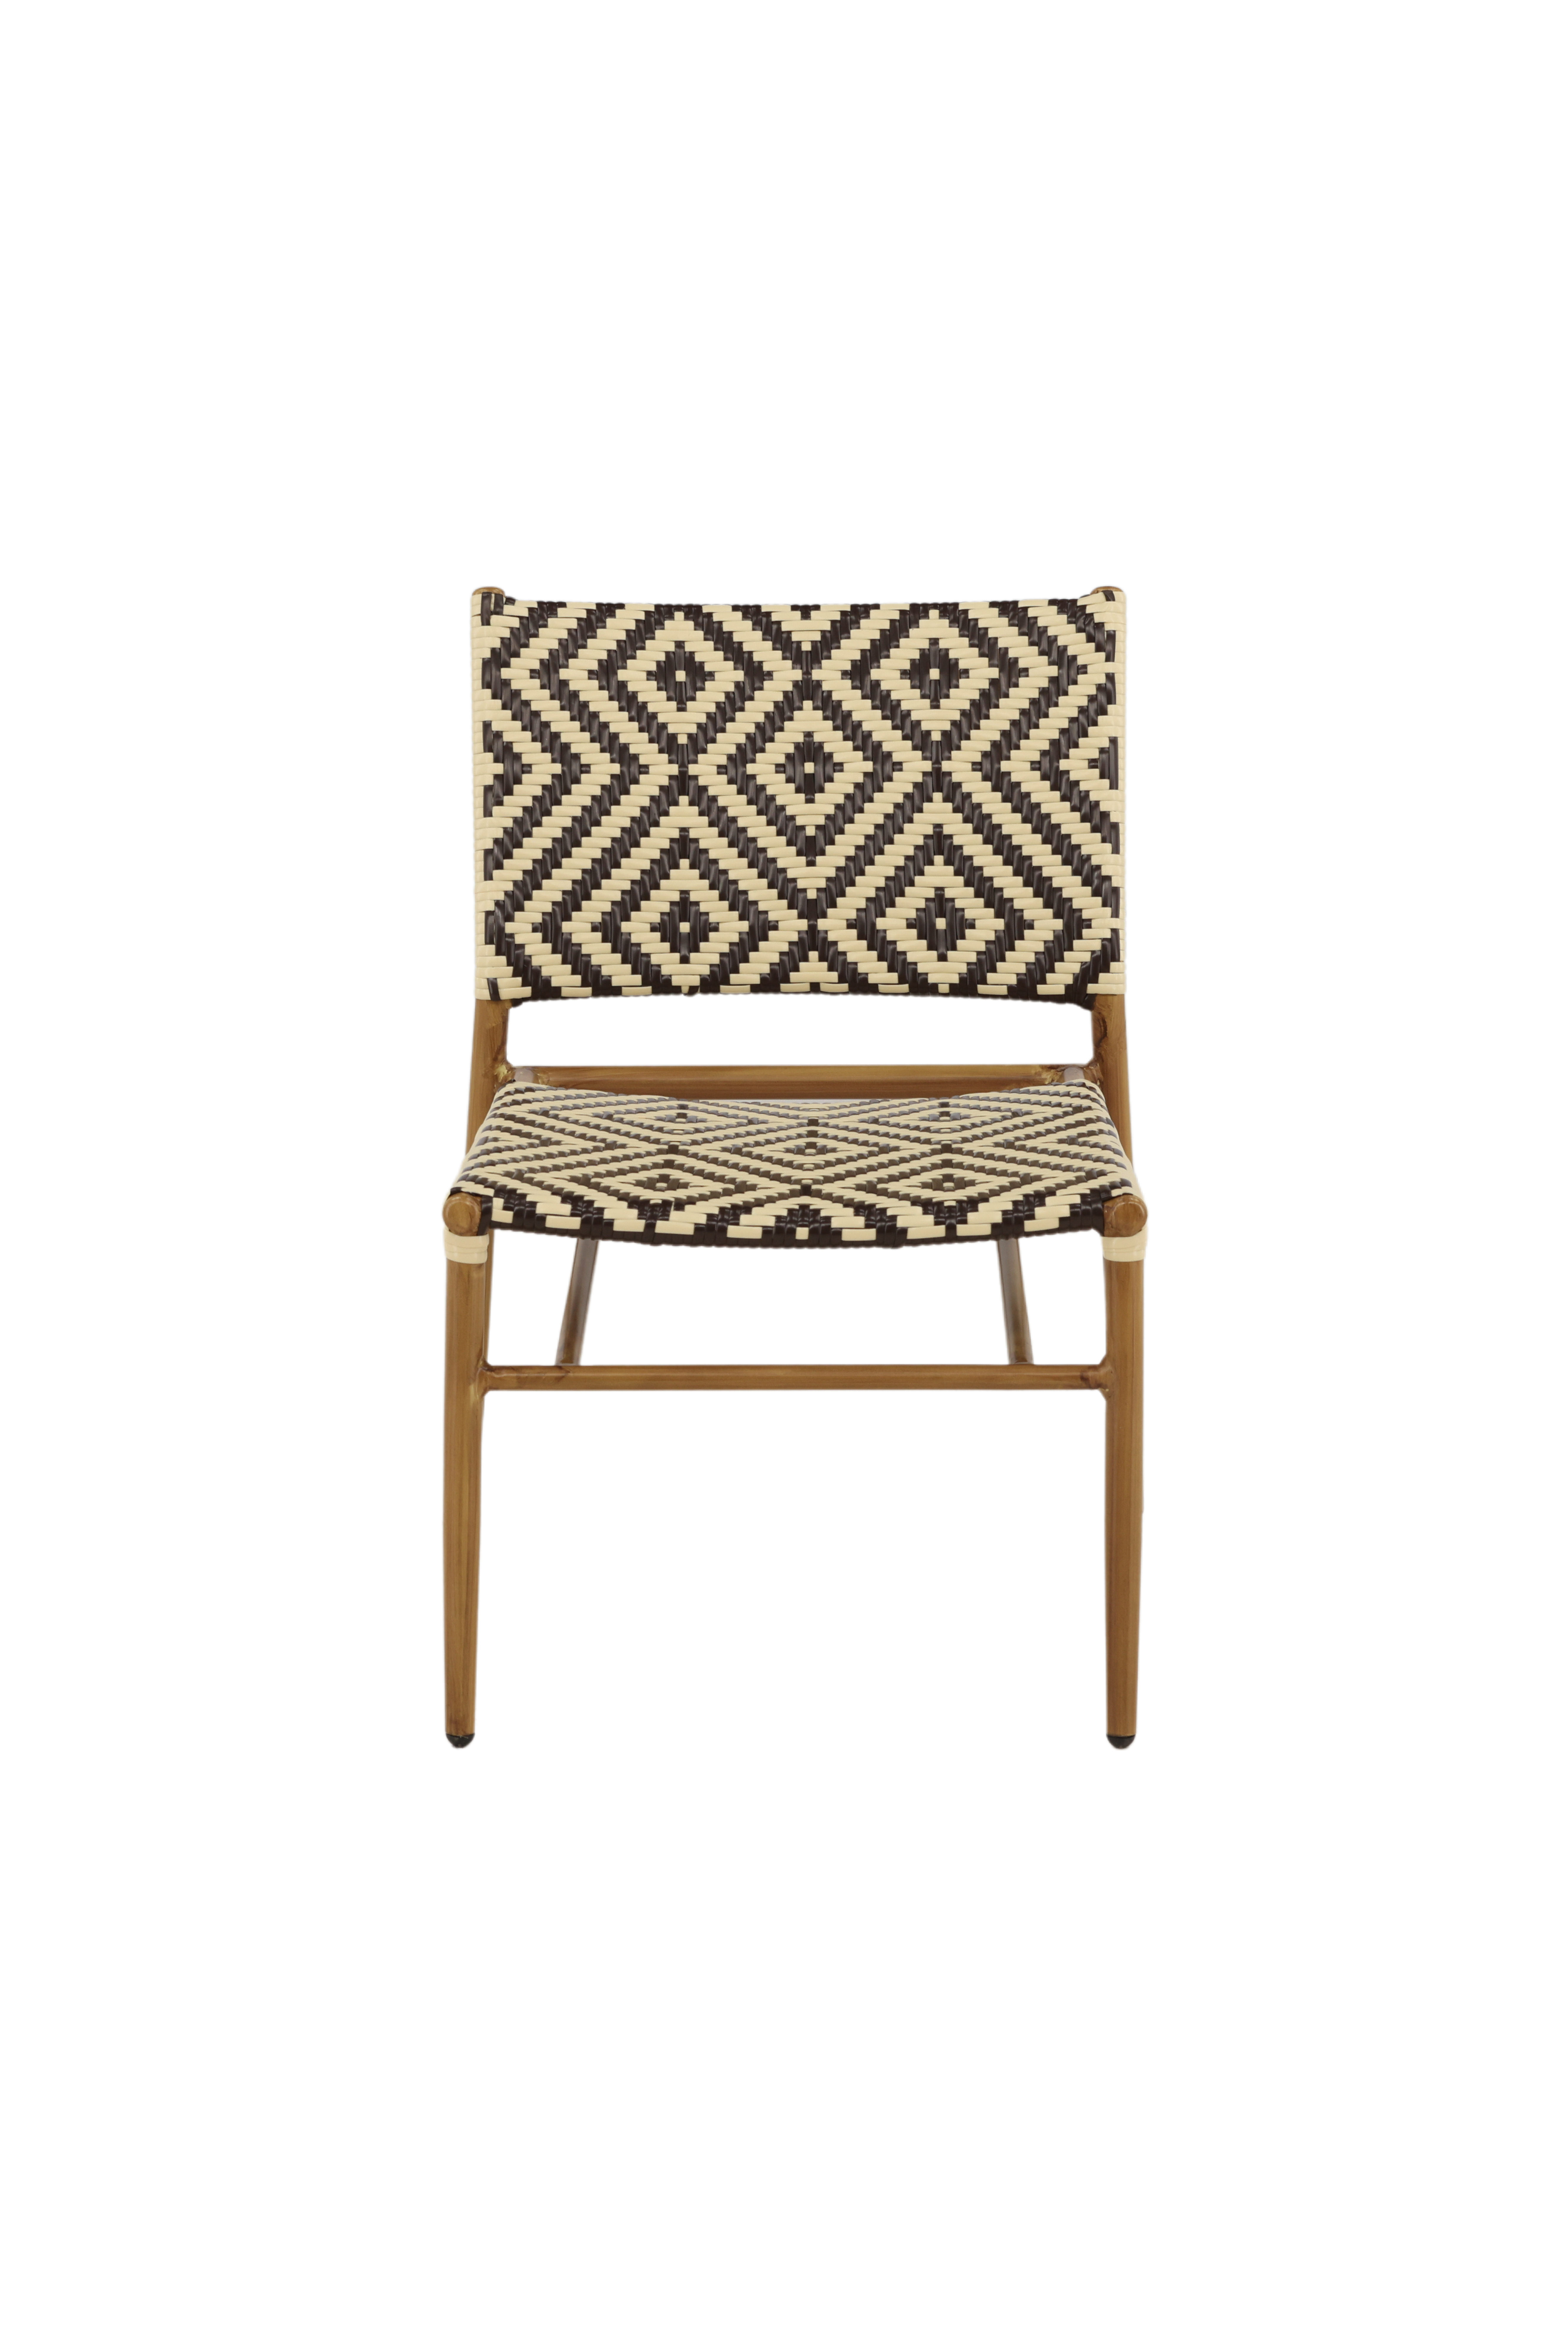 Billede af VENTURE DESIGN Calapan udendørs loungestol - beige/brun polyrattan og natur aluminium